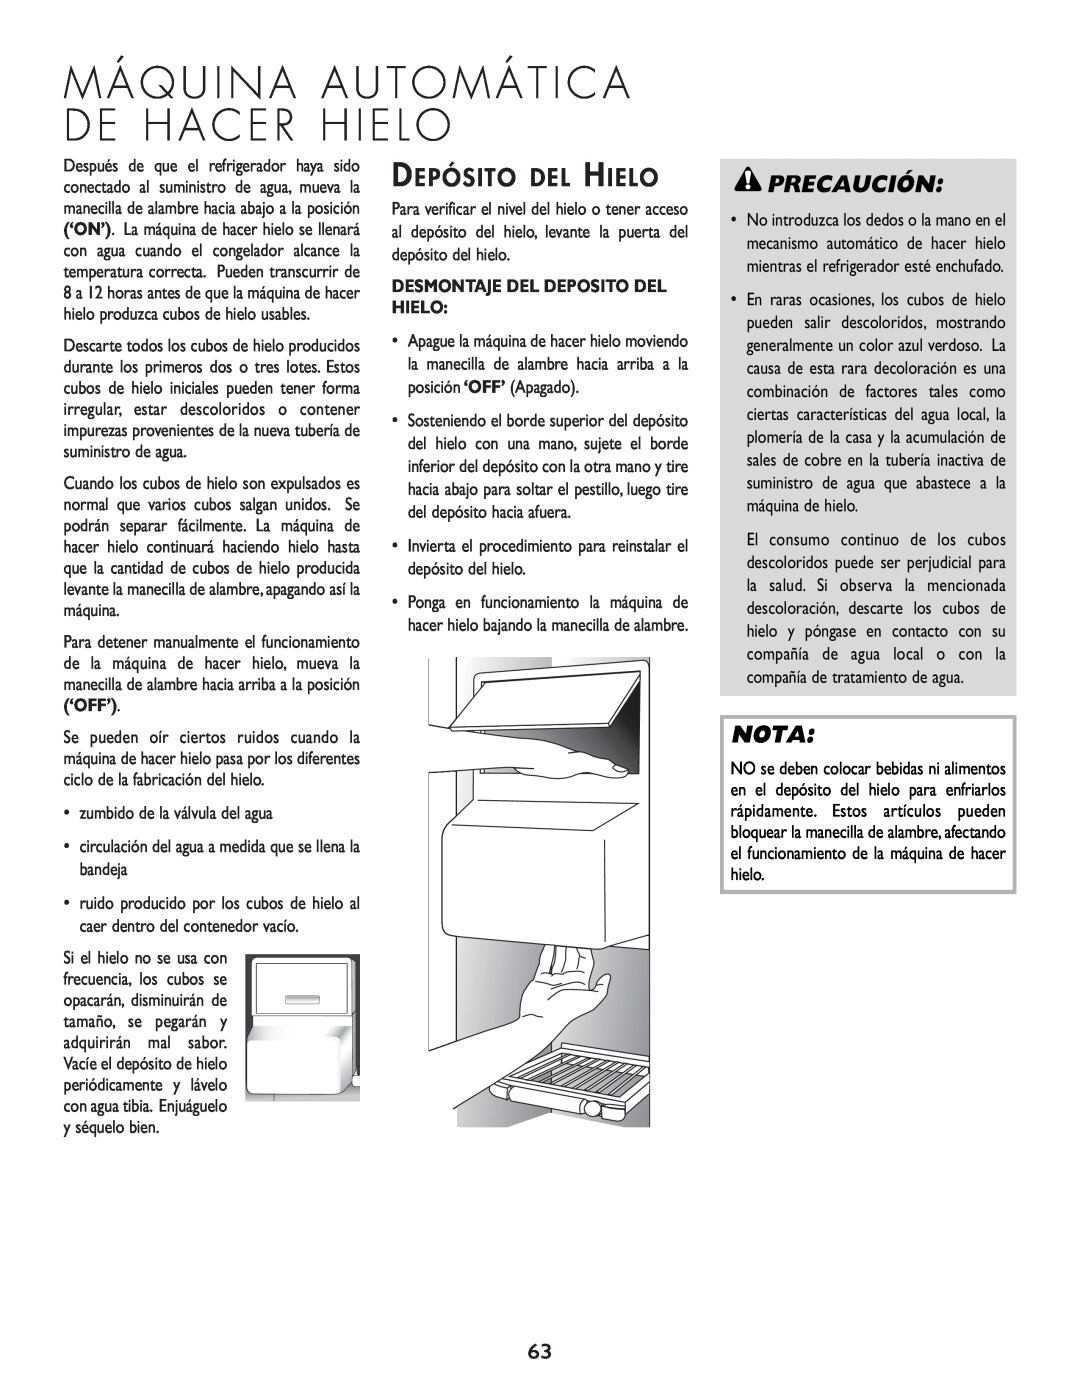 Cuno 111405-1 manual Depósito Del Hielo, Precaución, Nota, Desmontaje Del Deposito Del Hielo 